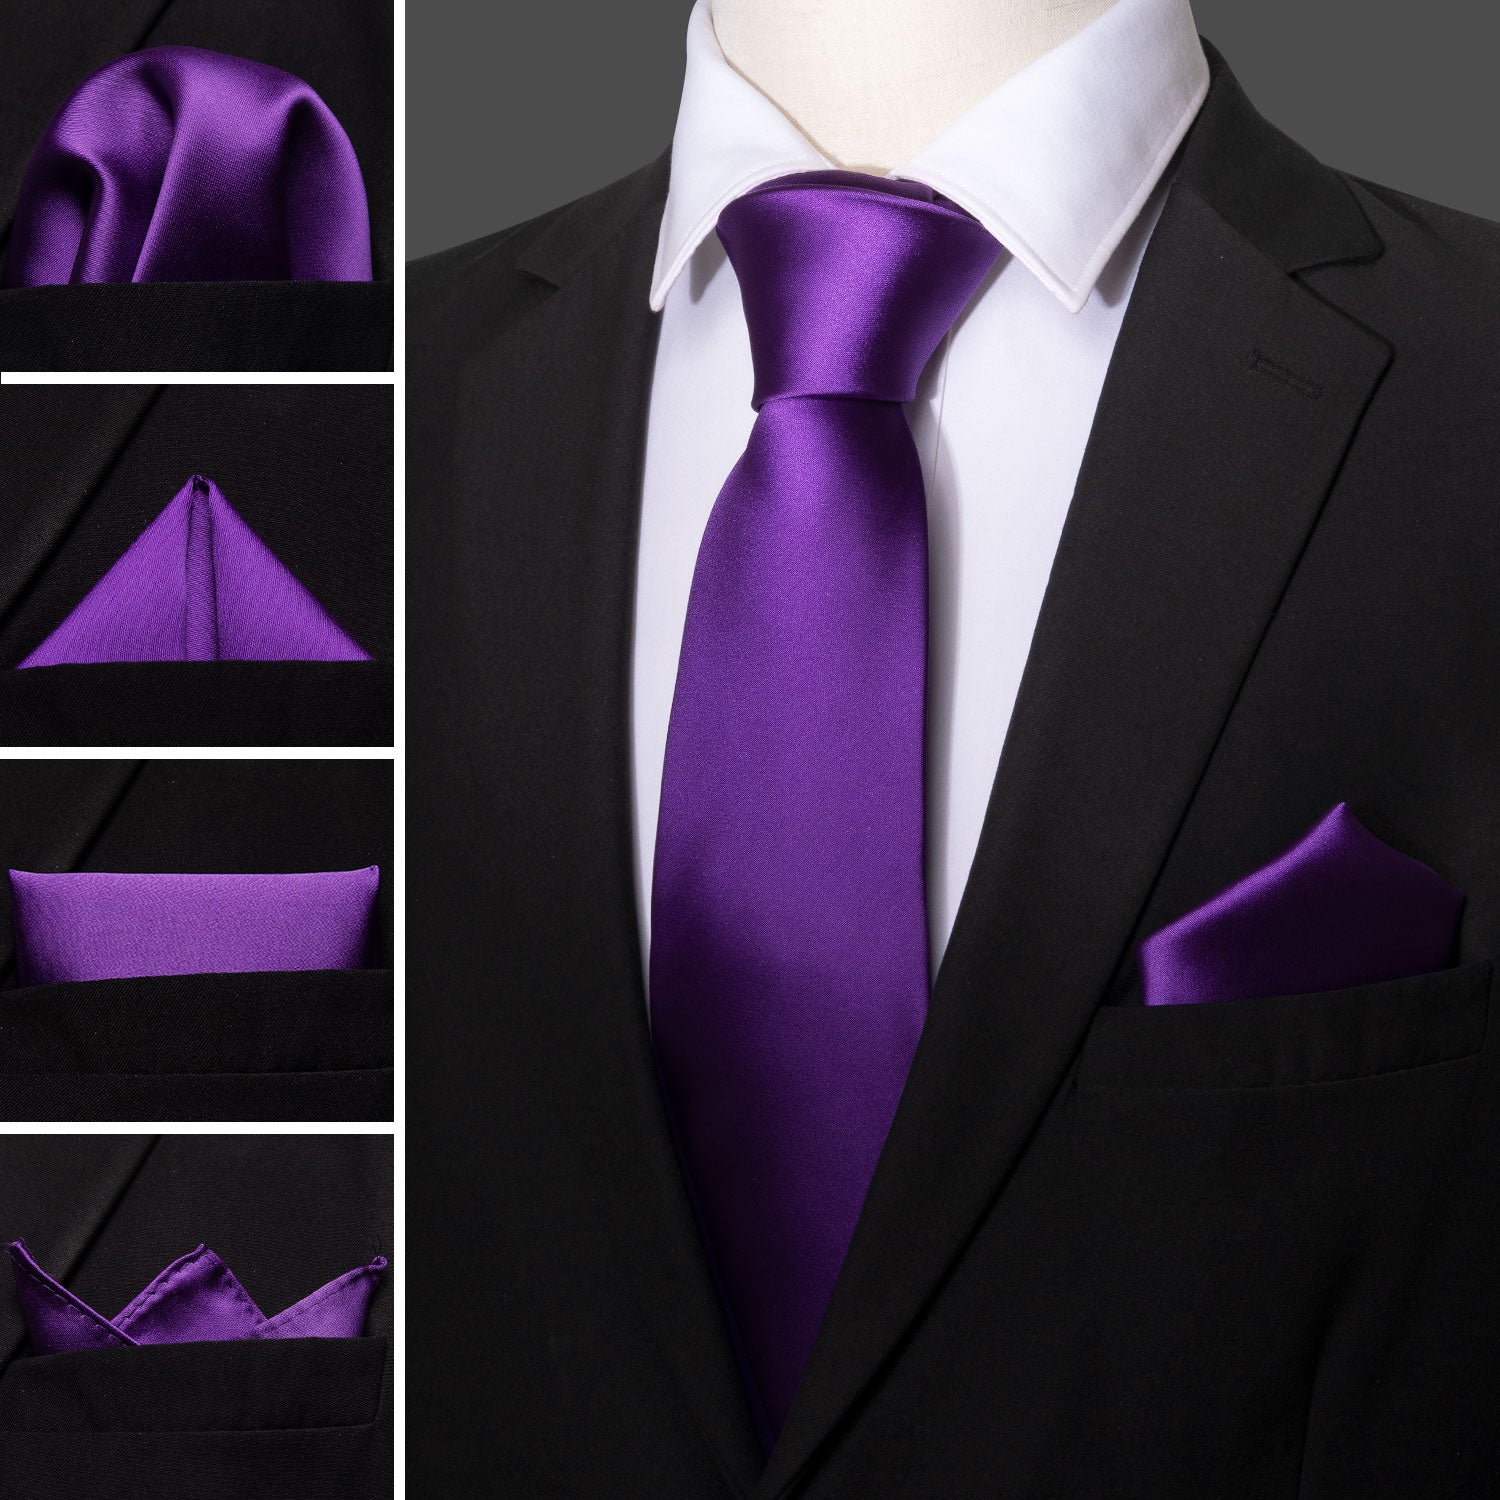 Barry.wang Solid Tie Deep Purple Tie Handkerchief Cufflinks Set